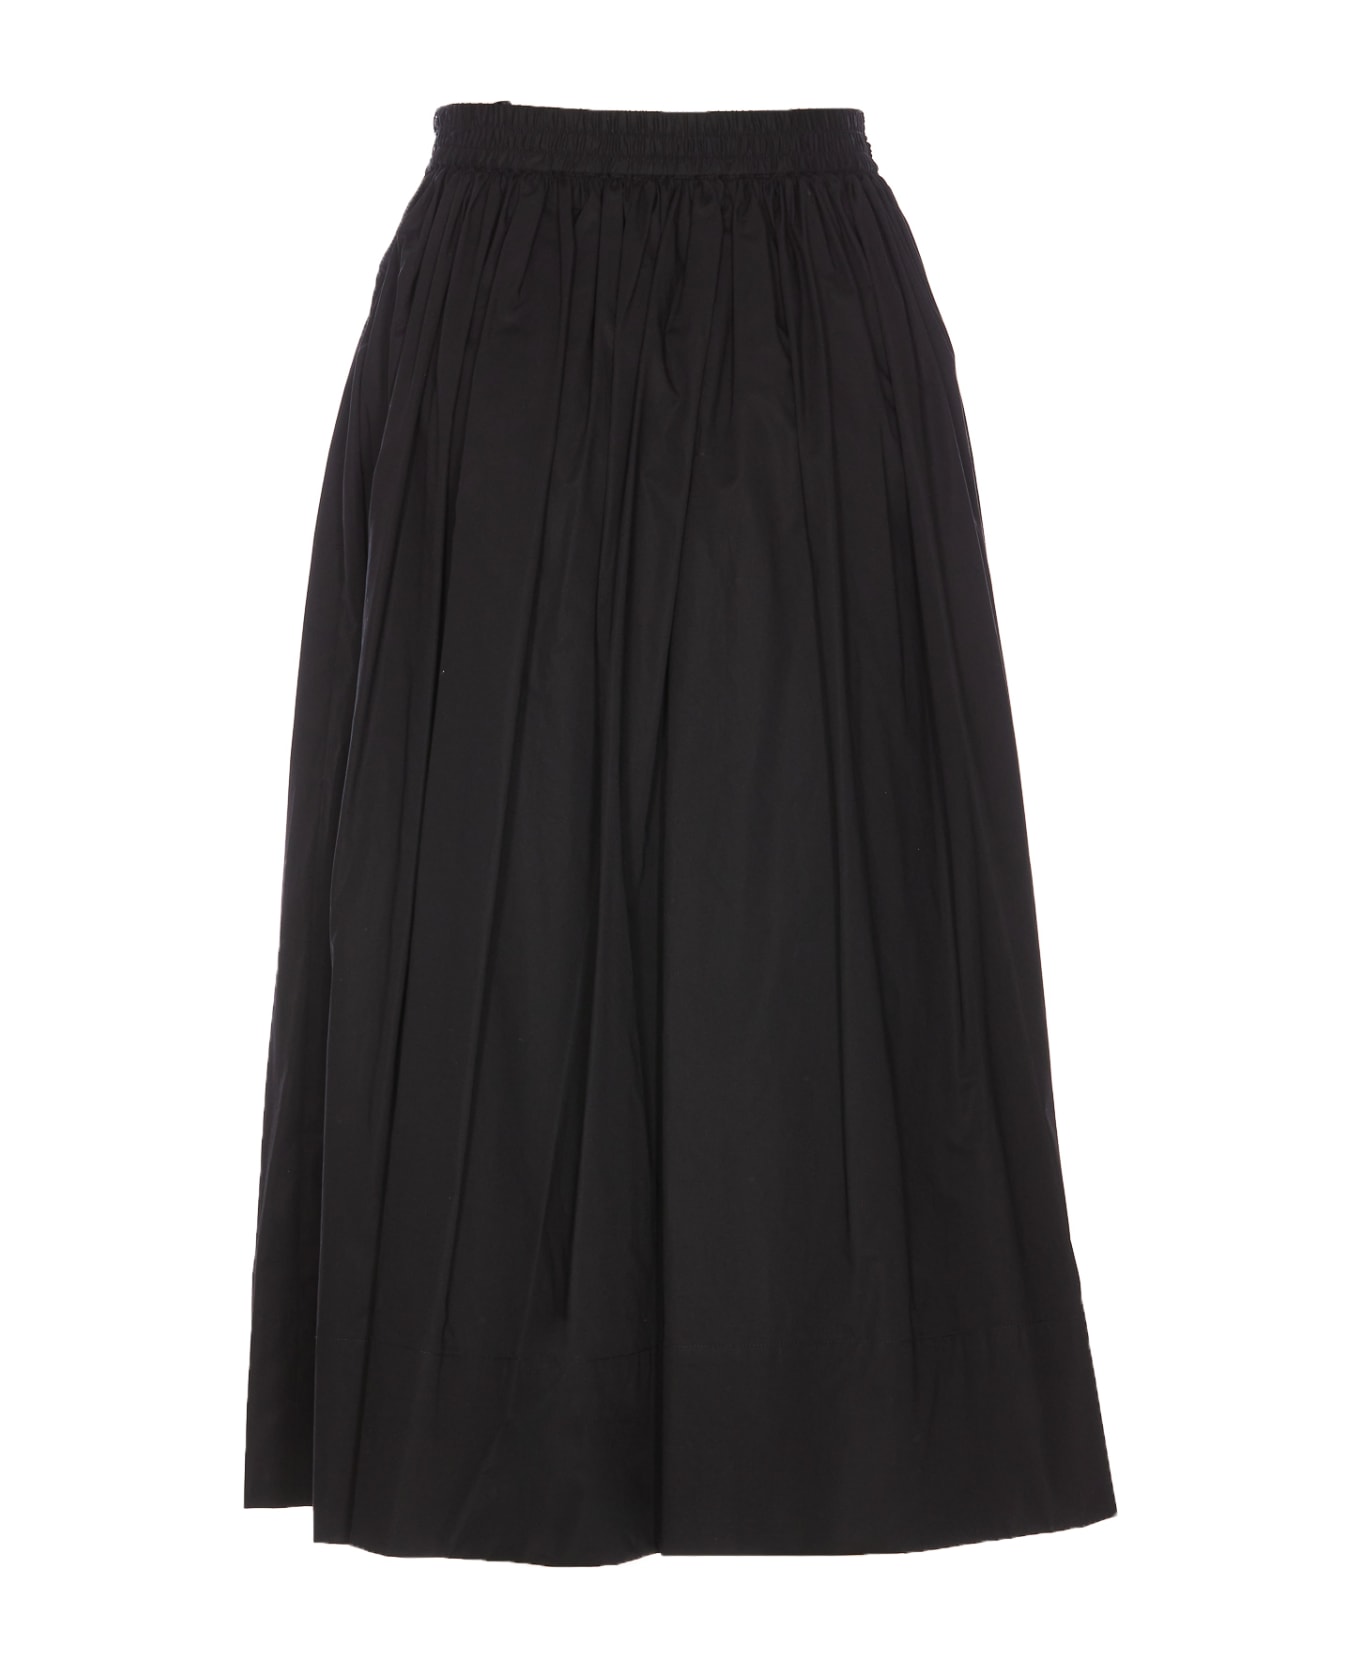 TwinSet Popeline Oval-t Longuette Skirt - Nero